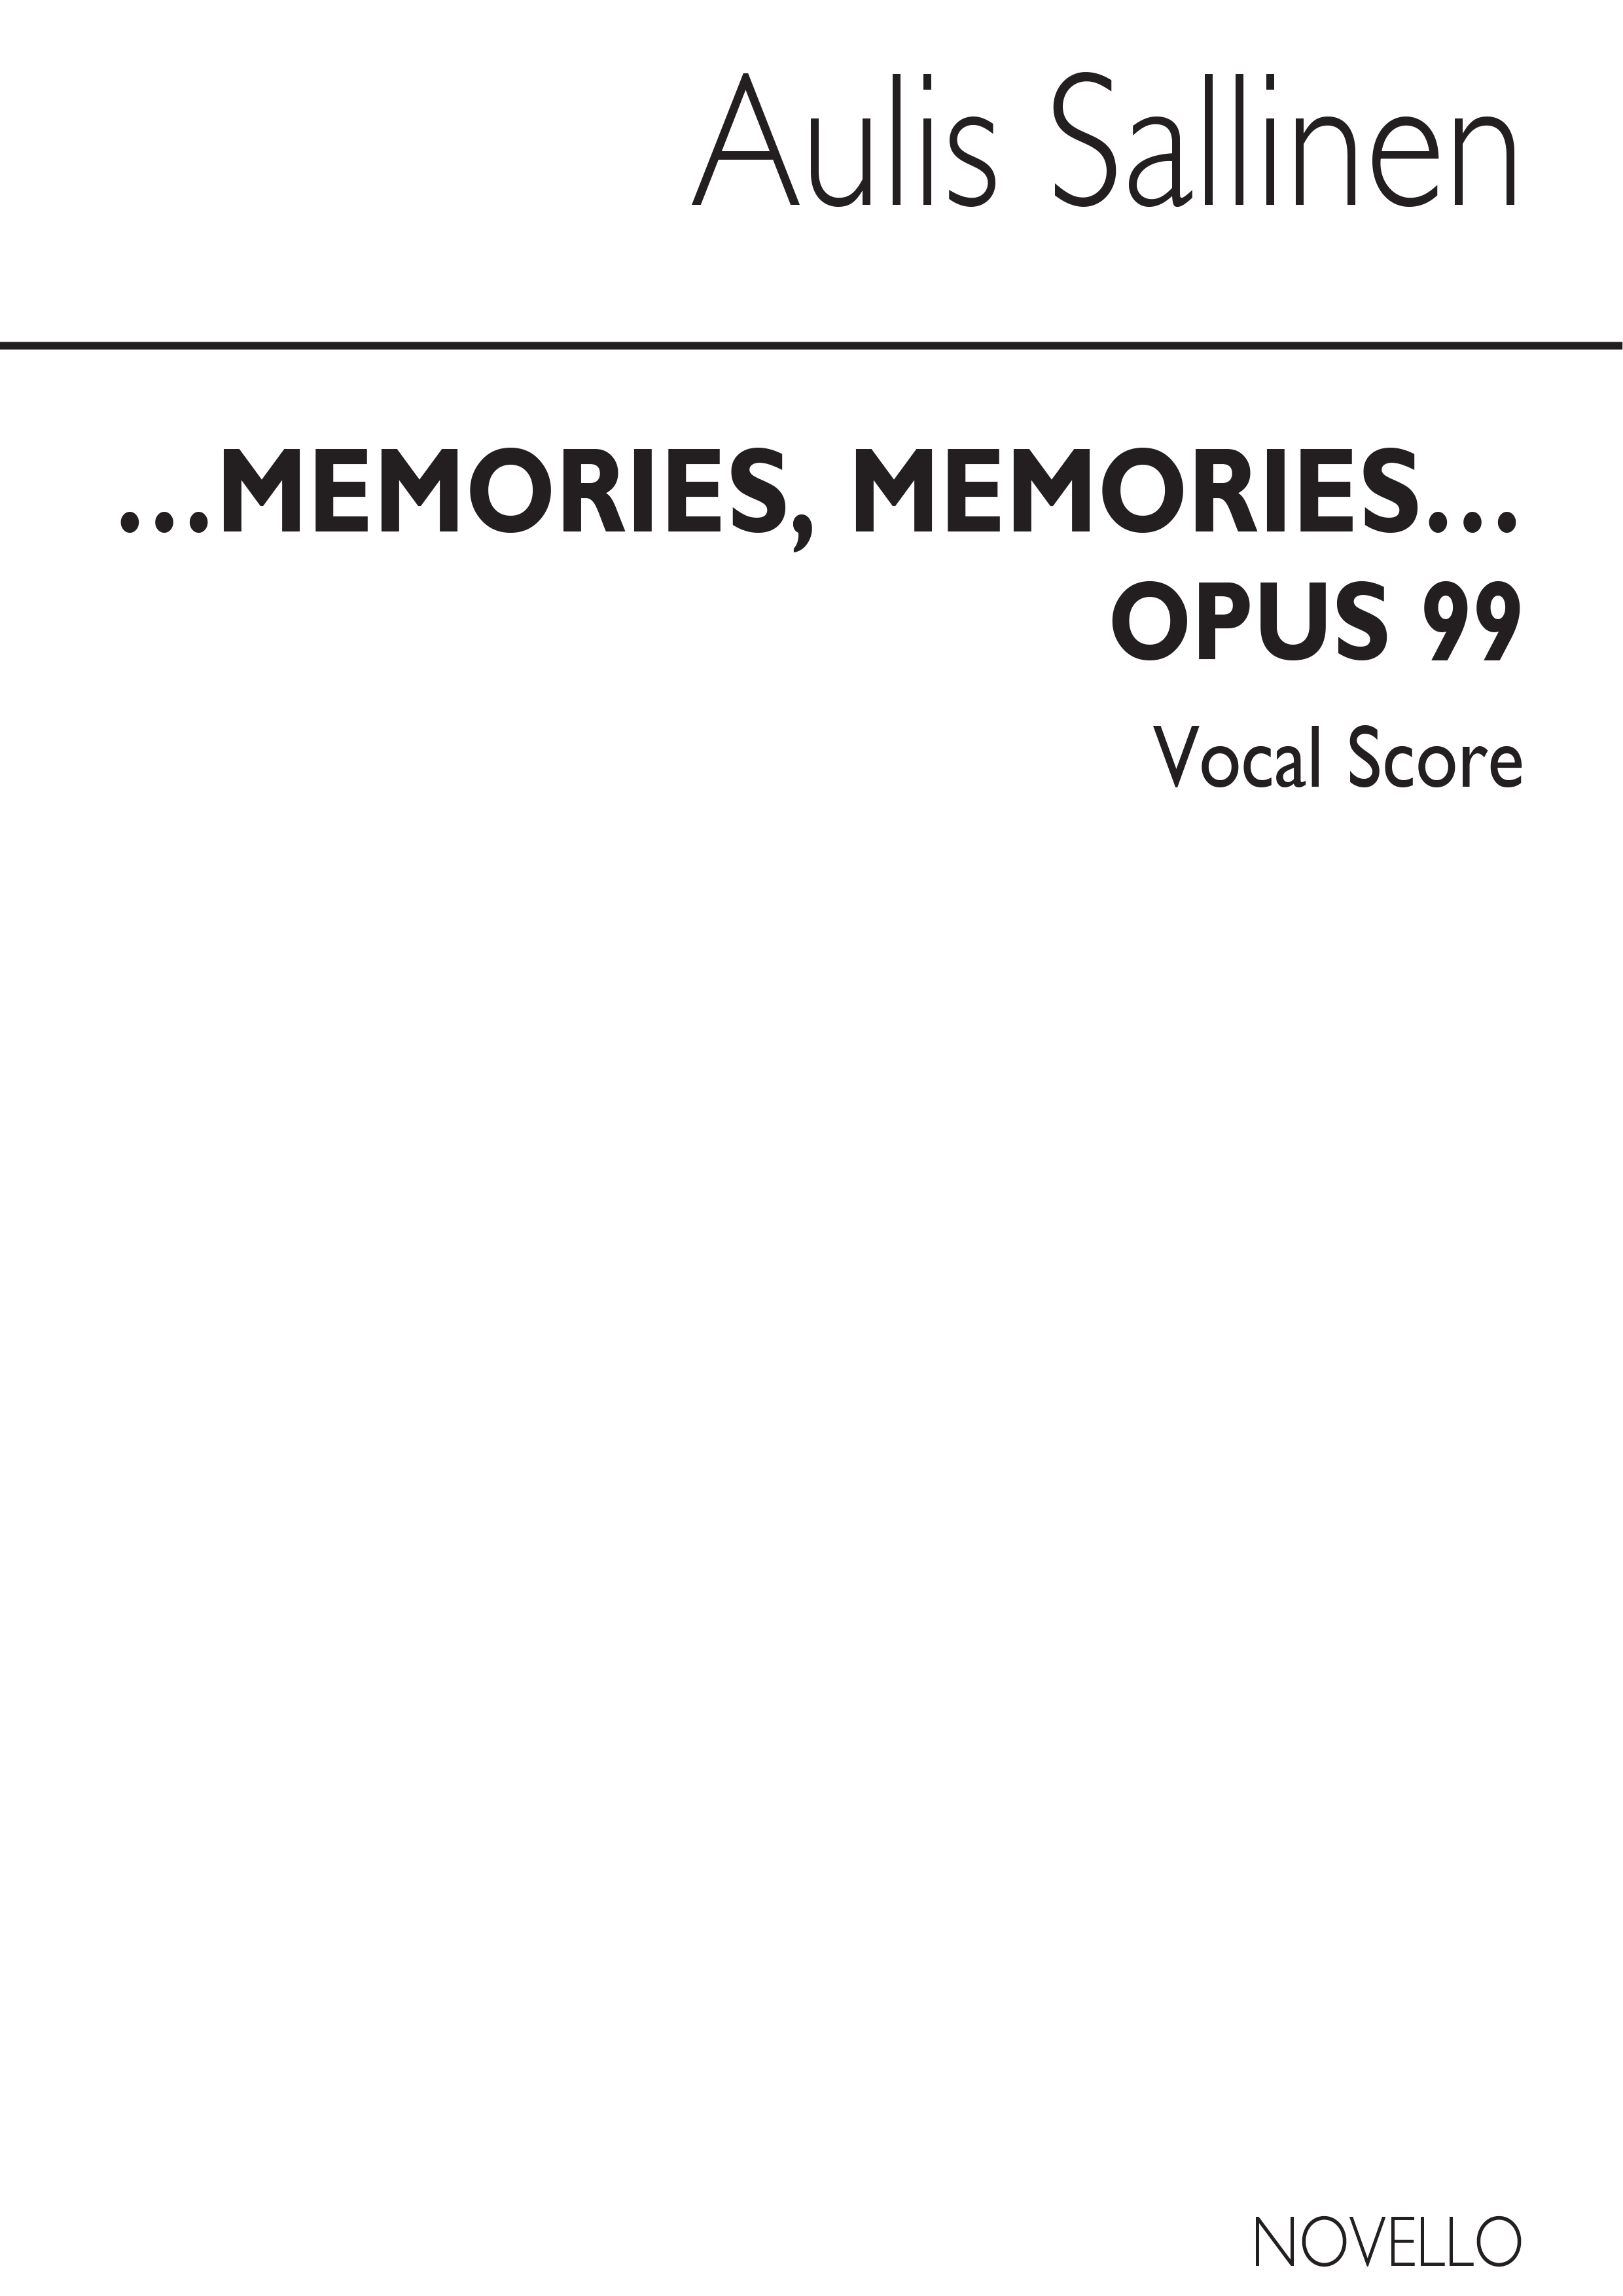 Aulis Sallinen: Memories  Memories?: SSA: Vocal Score